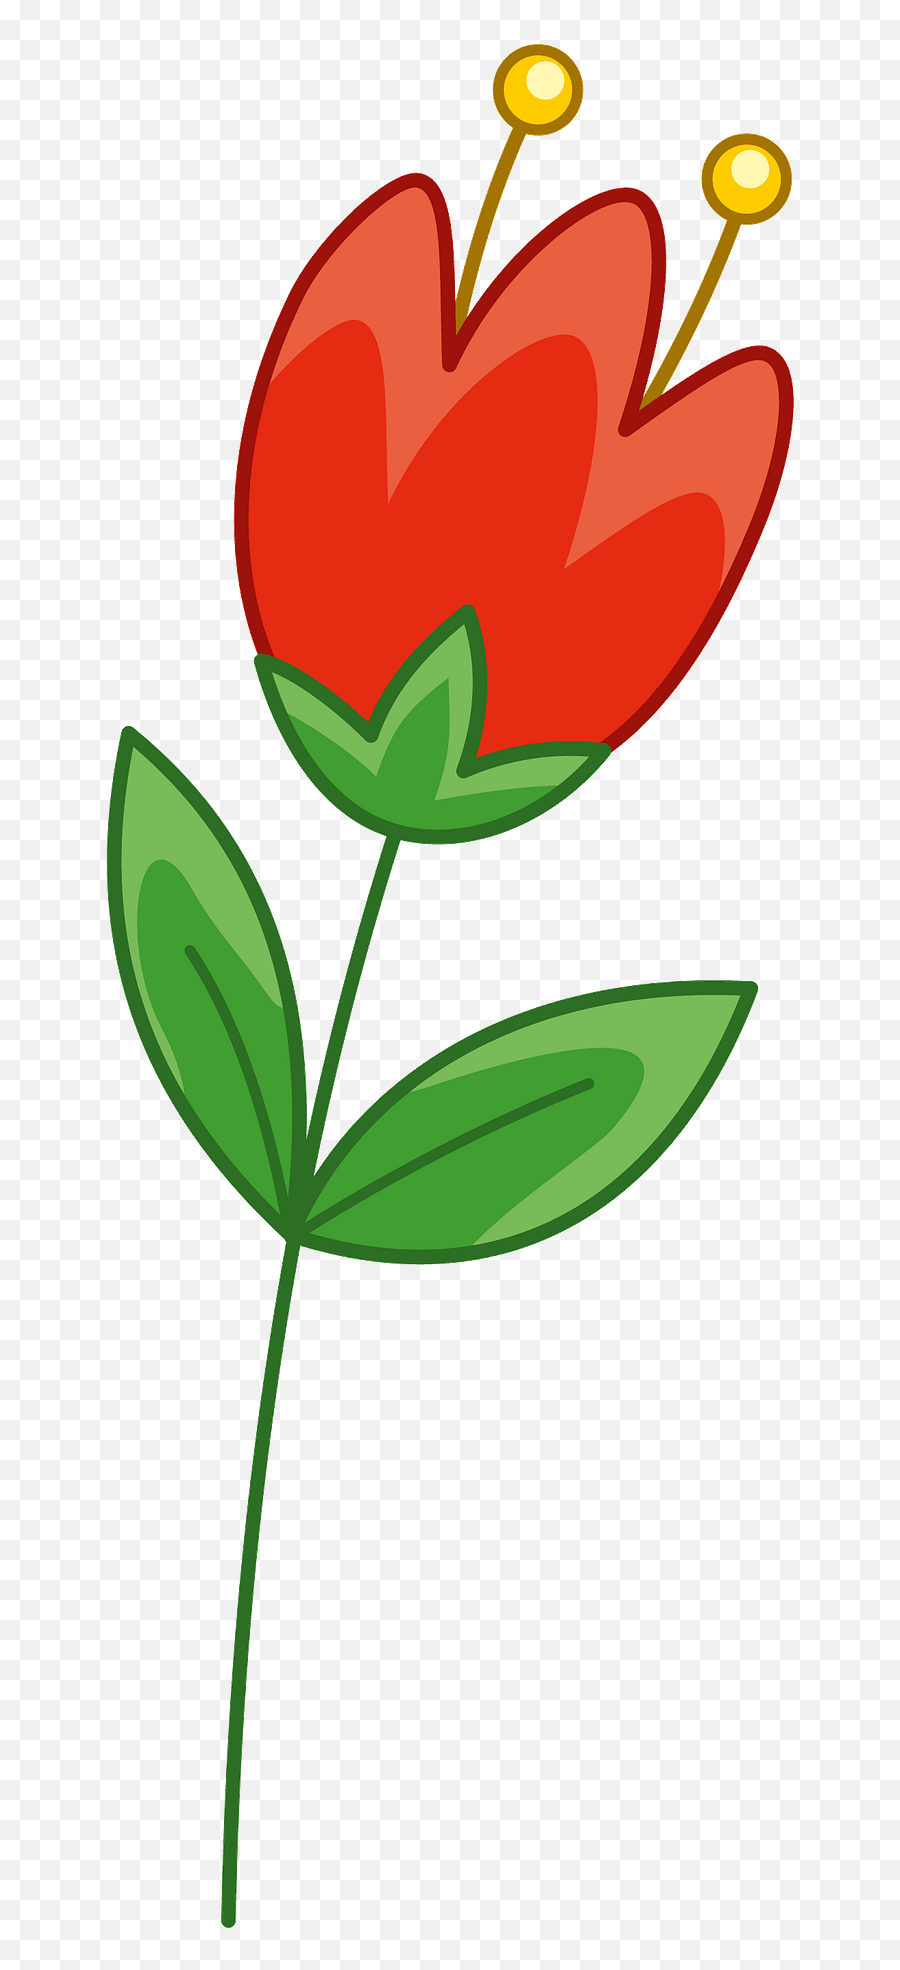 Red Flower Clipart - Flower Clipart Emoji,Flower Clipart